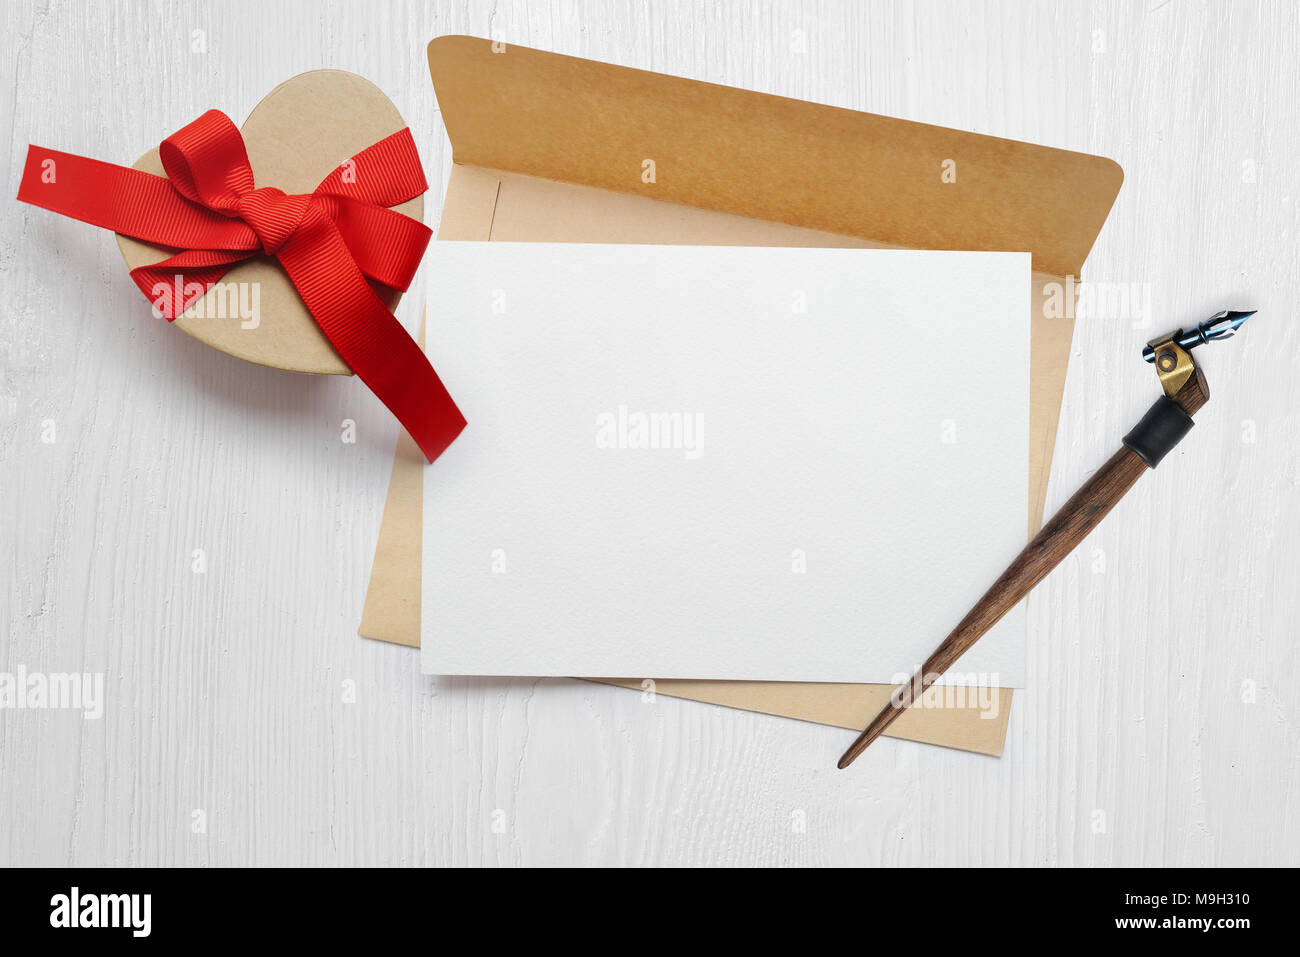 Plume calligraphique maquette une enveloppe avec une lettre et un cadeau avec un arc rouge, carte de souhaits pour la Saint-Valentin avec place pour votre texte. Mise à plat, haut voir photo maquette Banque D'Images